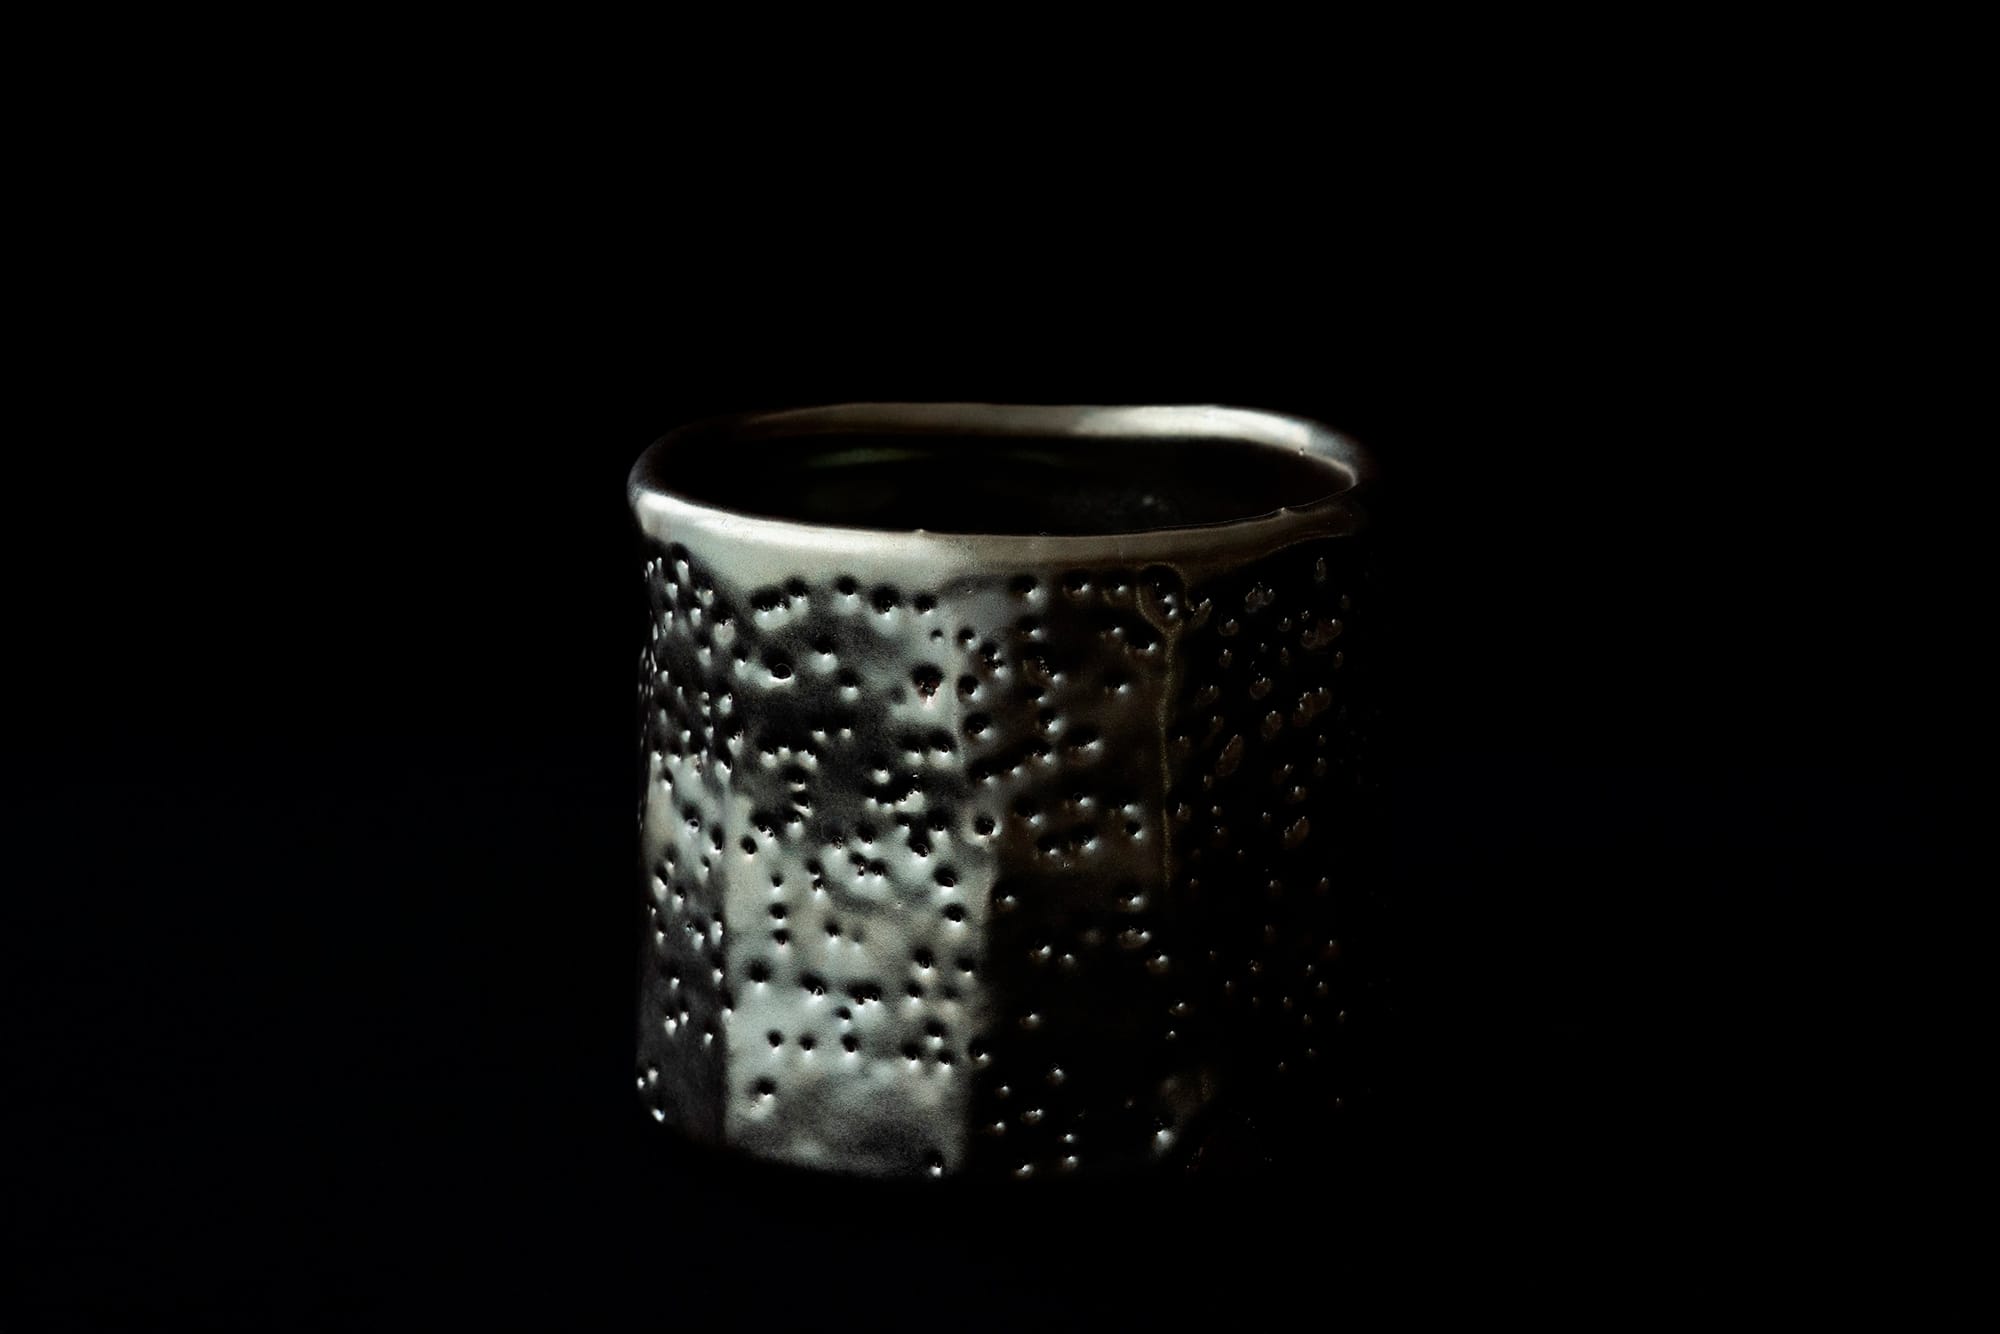 寂土の鉄分が釉薬変化して銀色となる。大蔵山寂土碗。2019年制作。ギャラリー册にて展示。Photography by Ikeda Yuichi